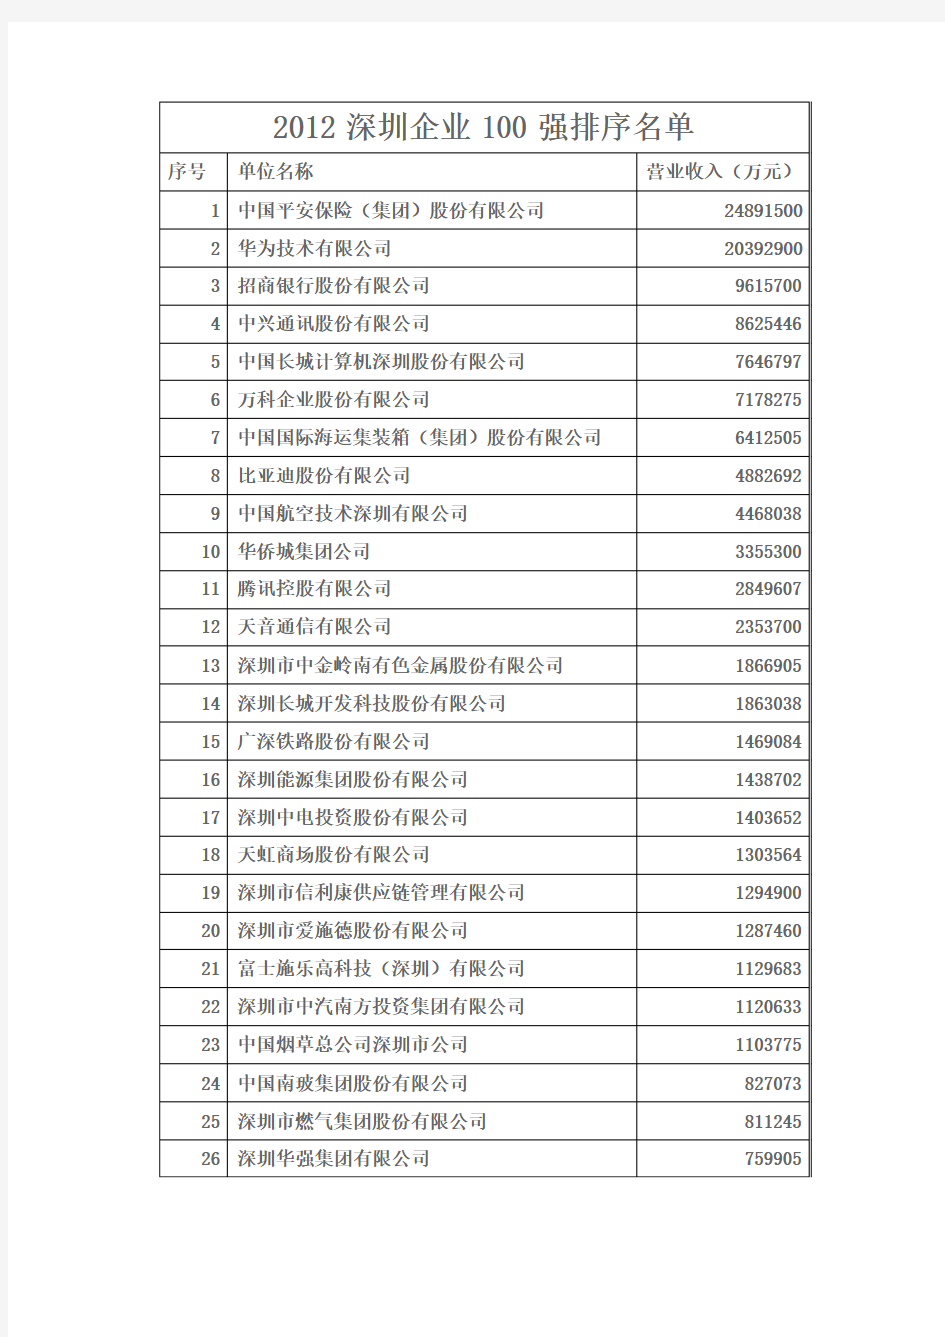 2012深圳企业100强排序名单